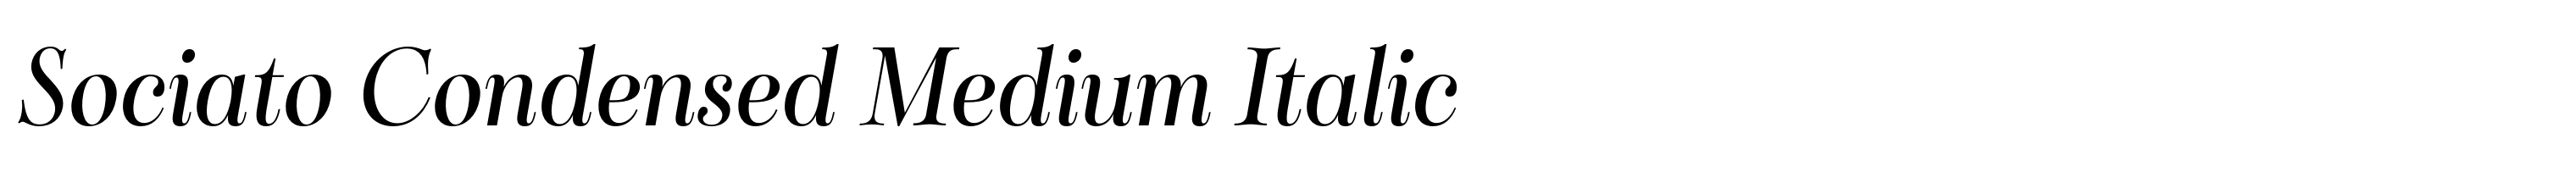 Sociato Condensed Medium Italic